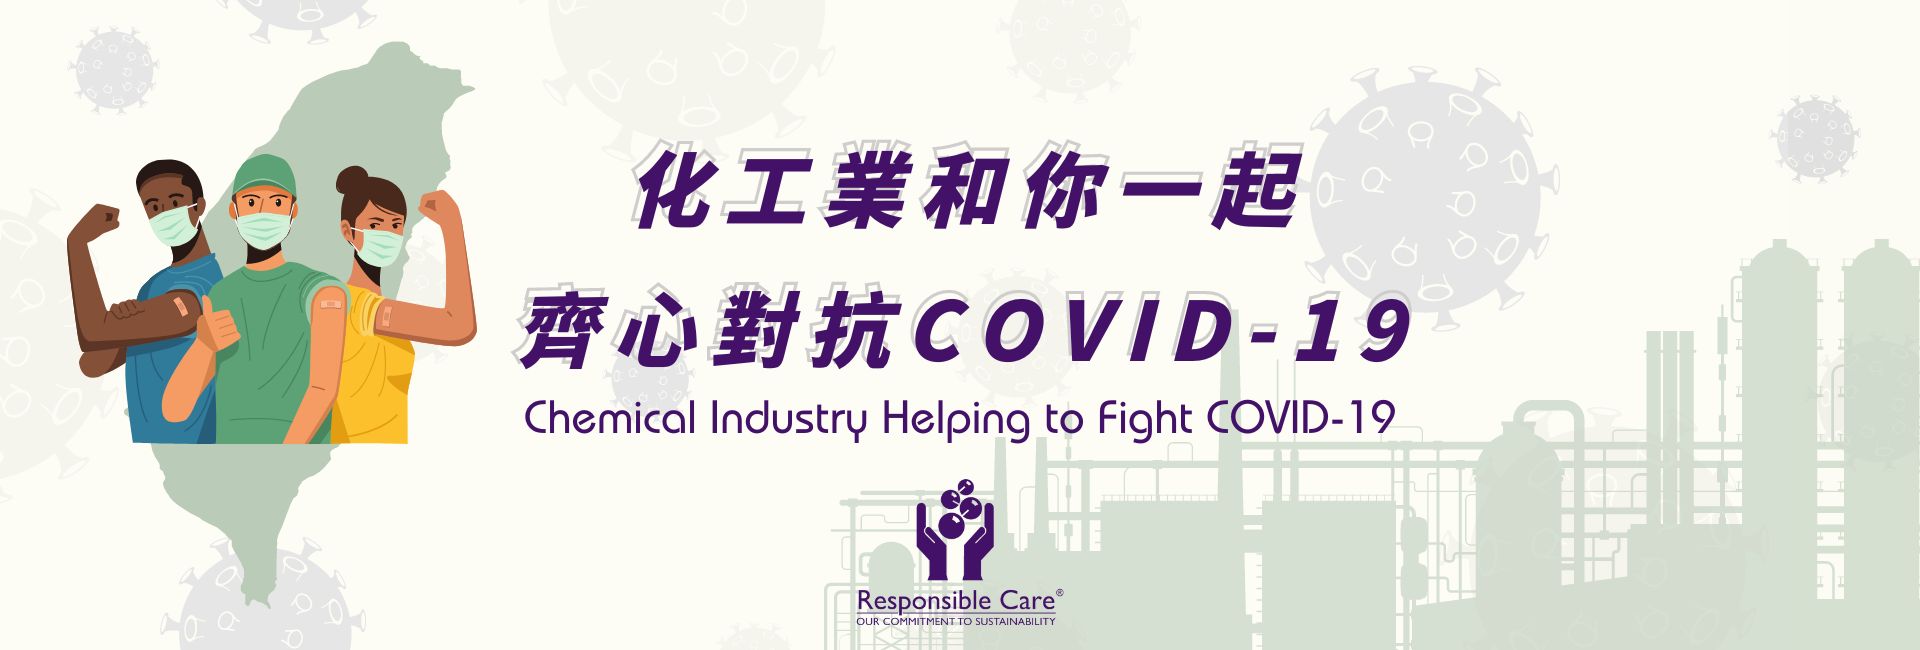 化工業與您一起努力對抗COVIN-19